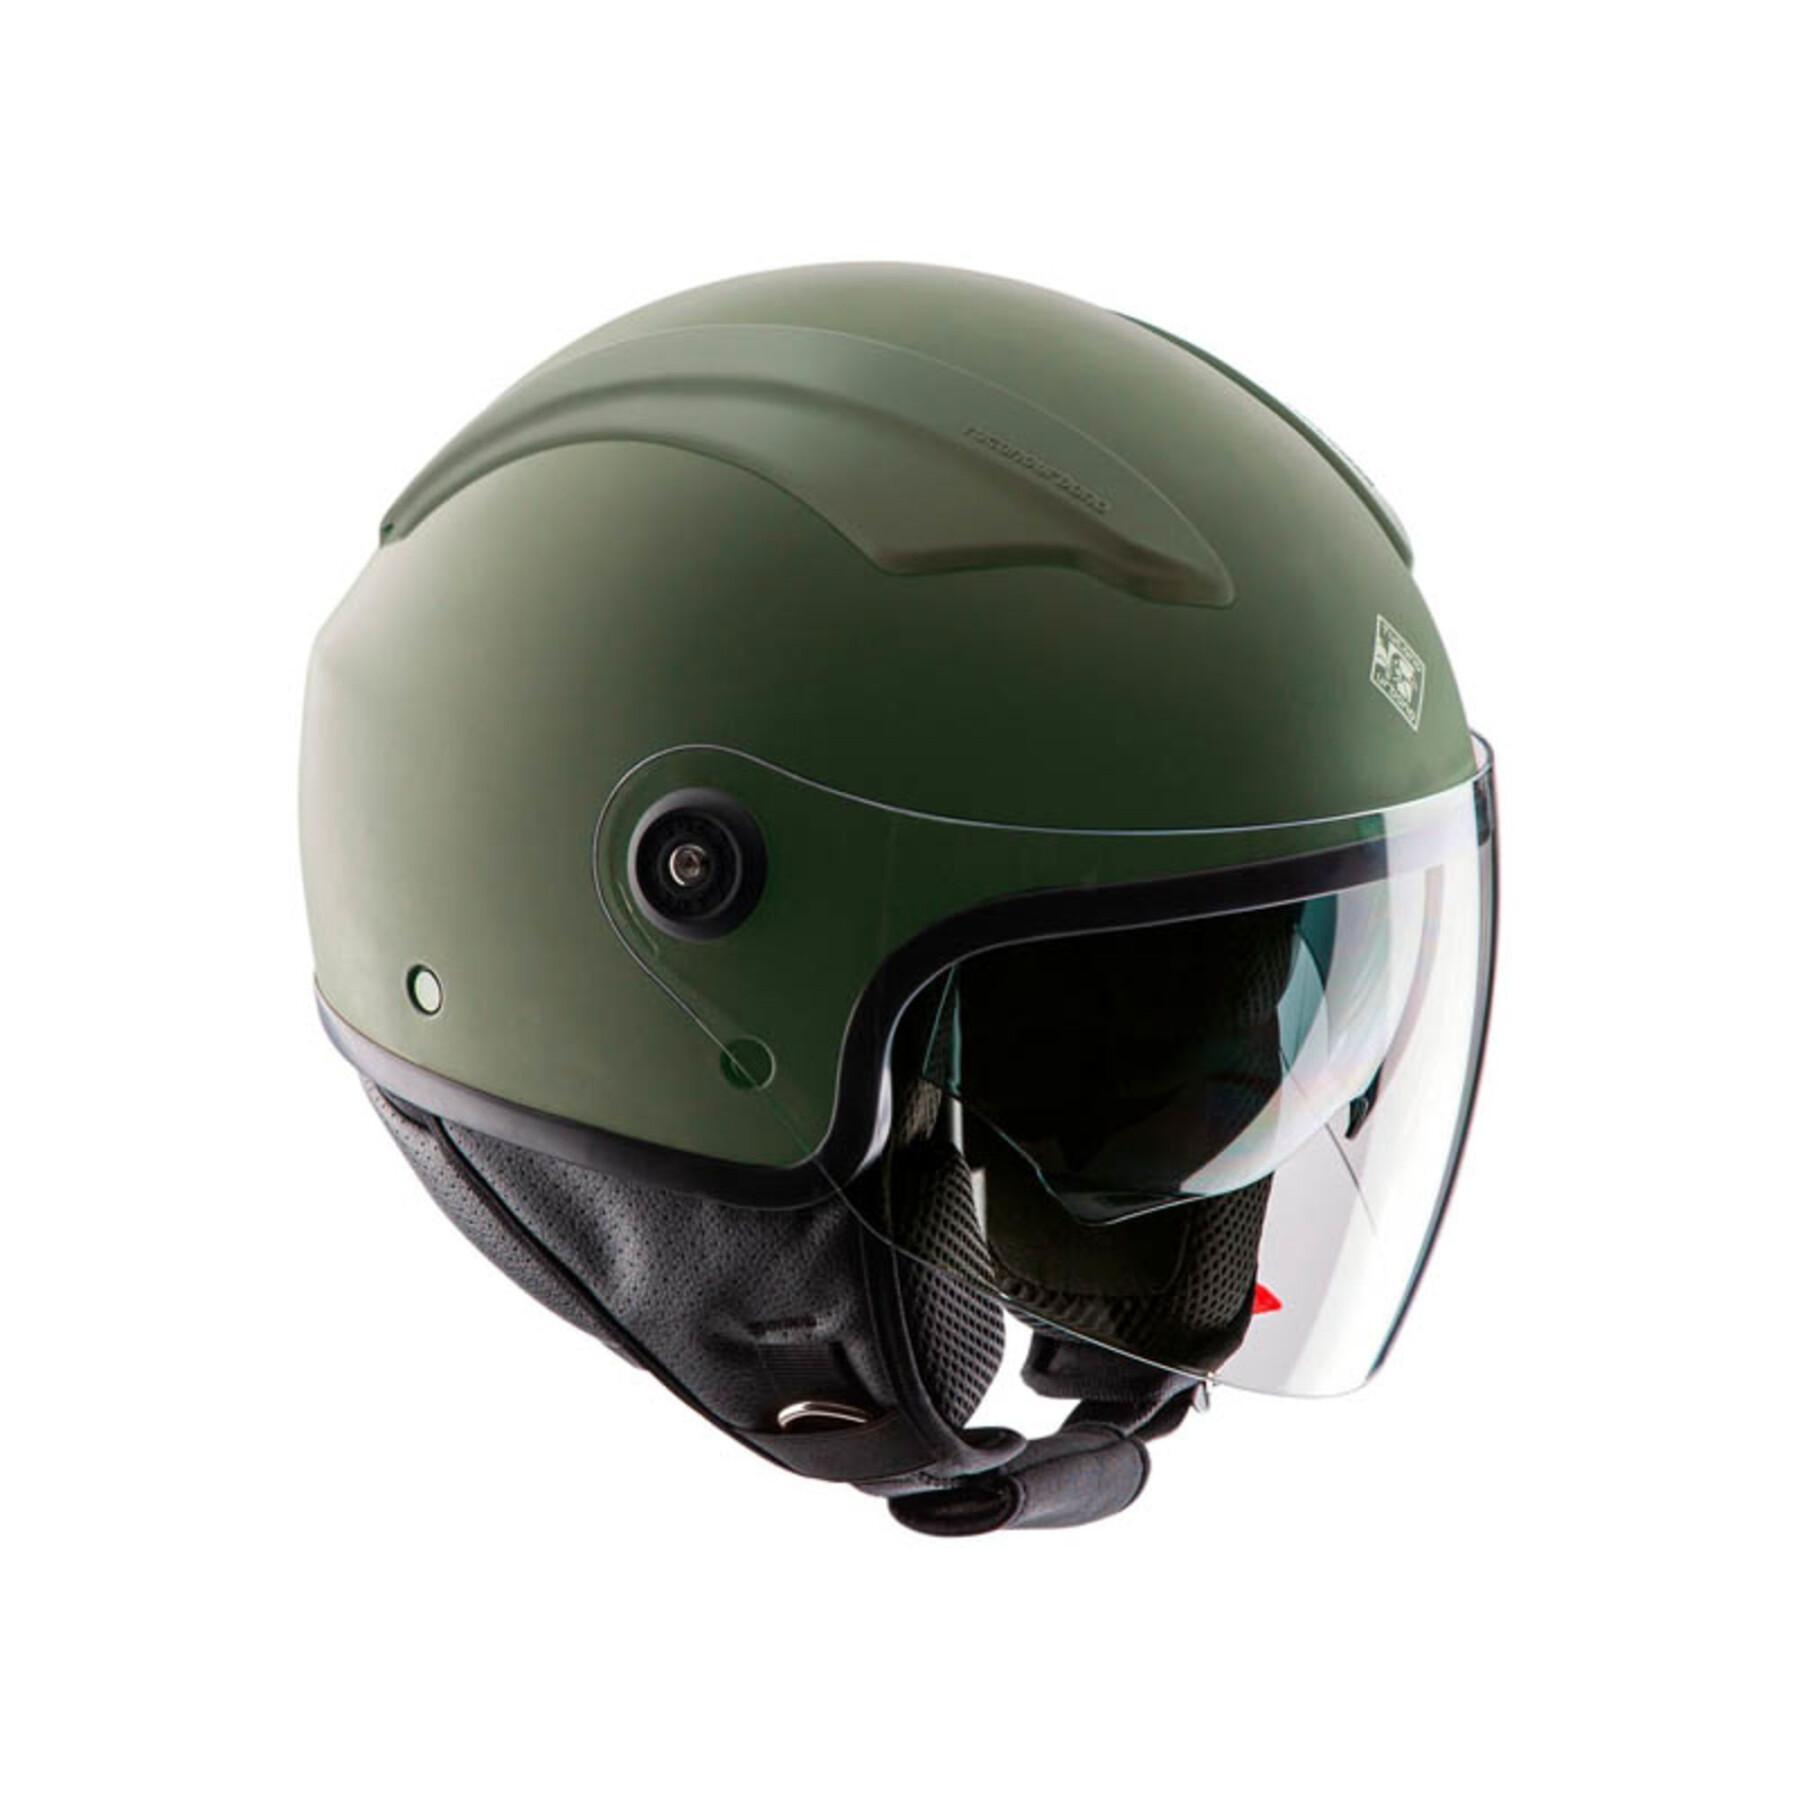 Half-jet motorcycle helmet Tucano Urbano El'top